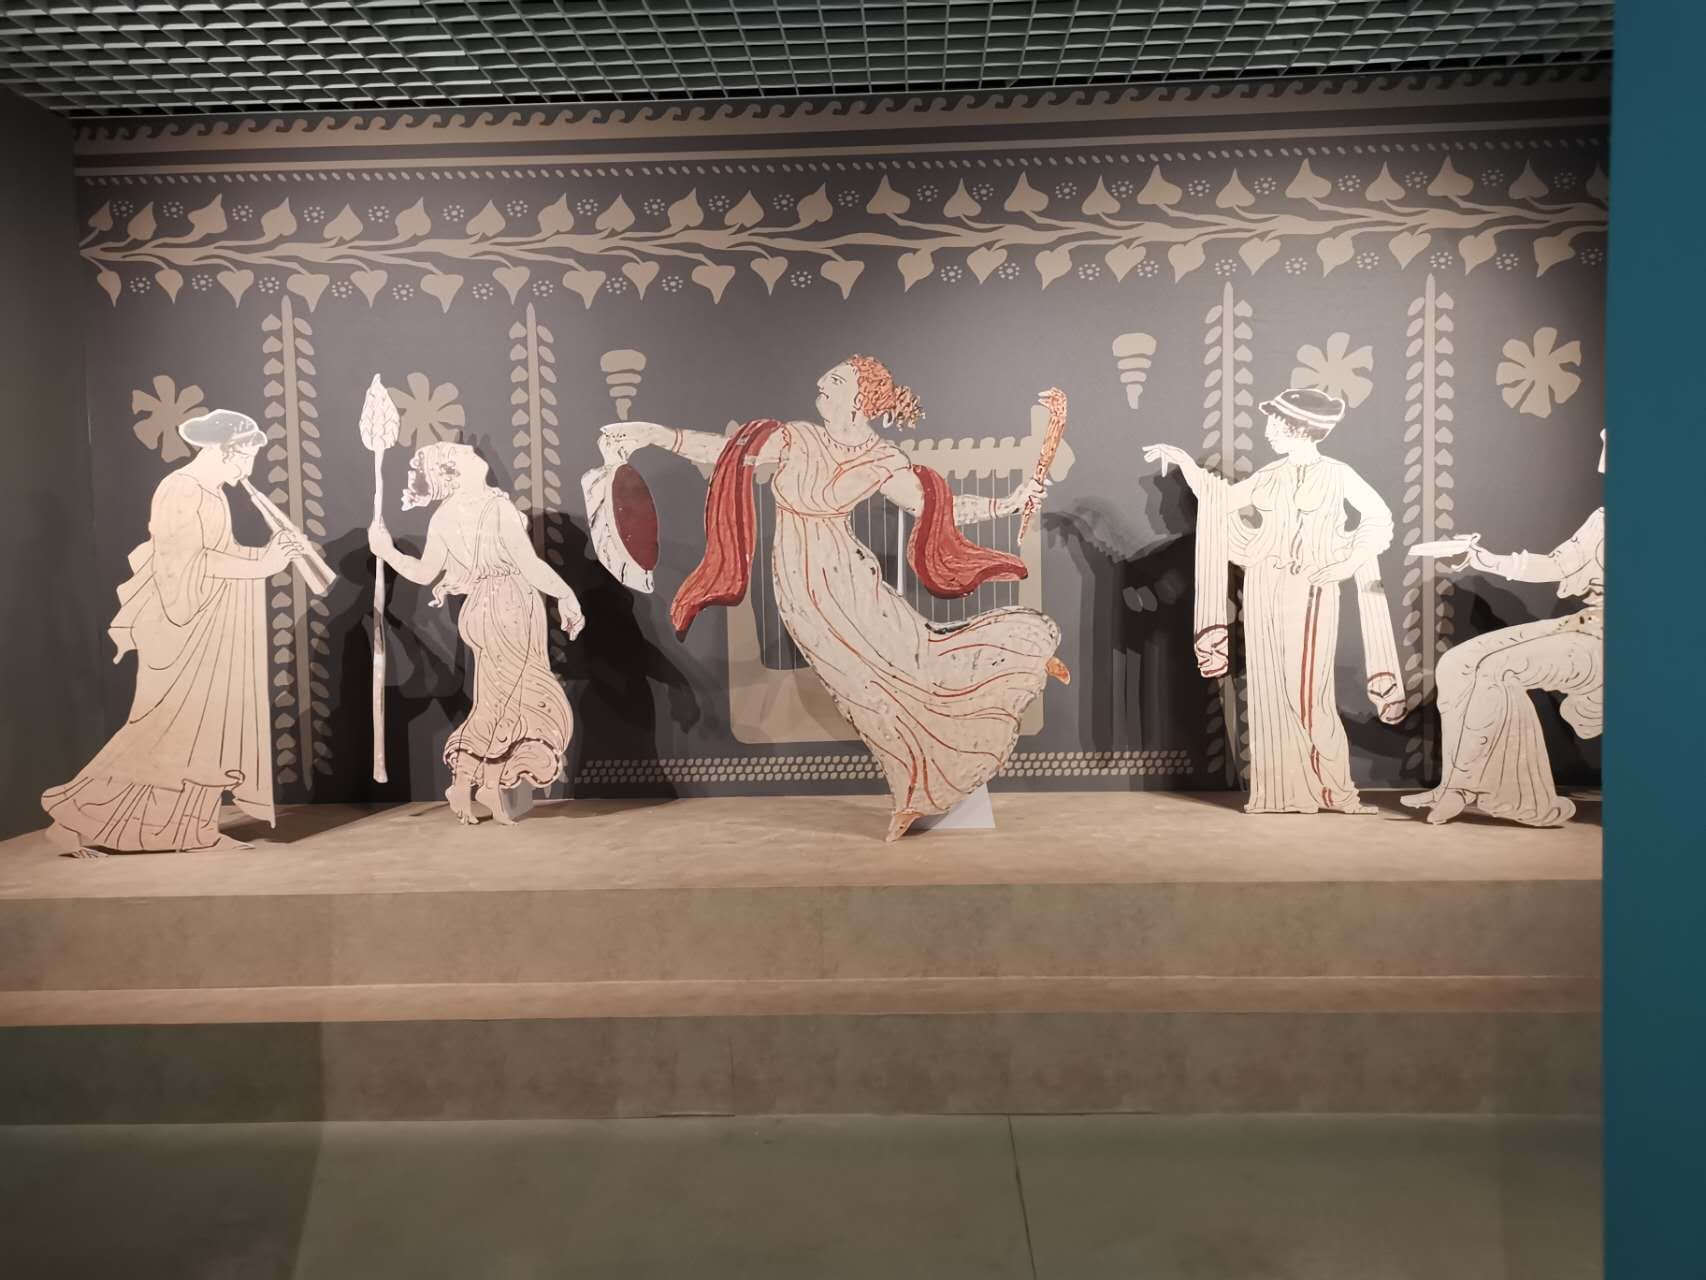 Galleria La Puglia in Cina con la mostra “I doni degli Dei. L’Apulia felix tra greci, indigeni e romani” - Diapositiva 1 di 15